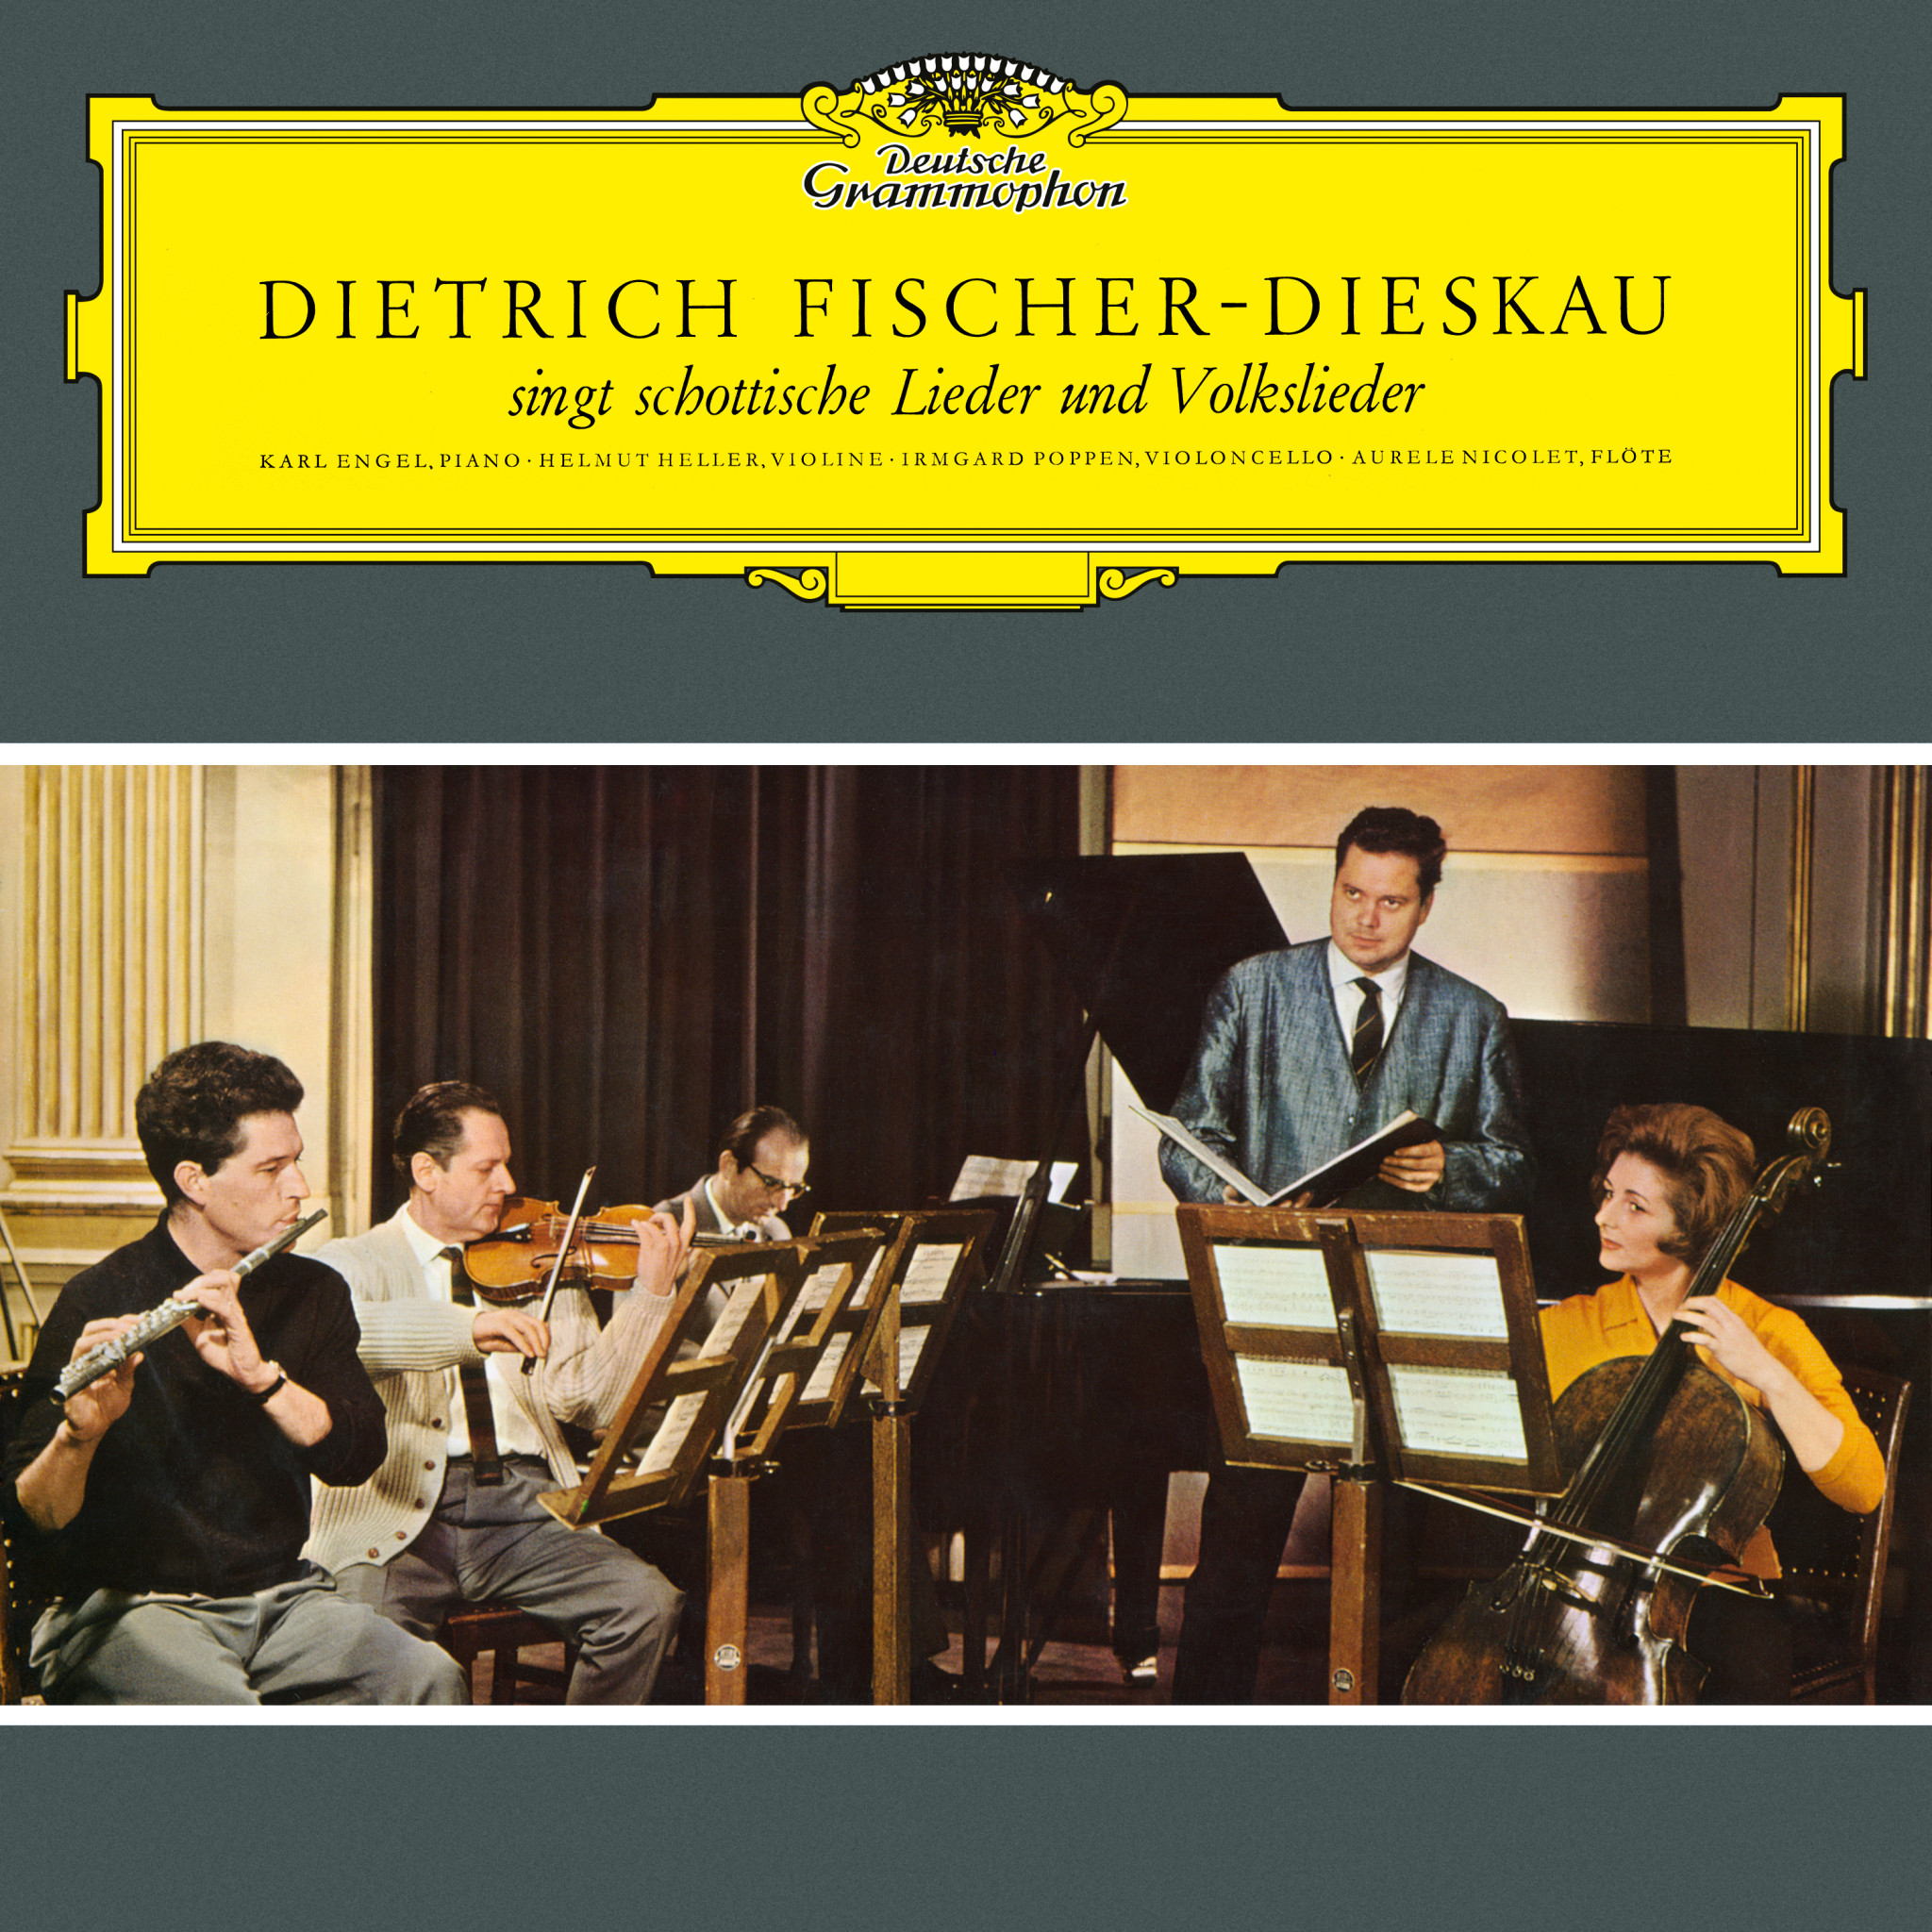 Dietrich Fischer-Dieskau - Folksong Settings